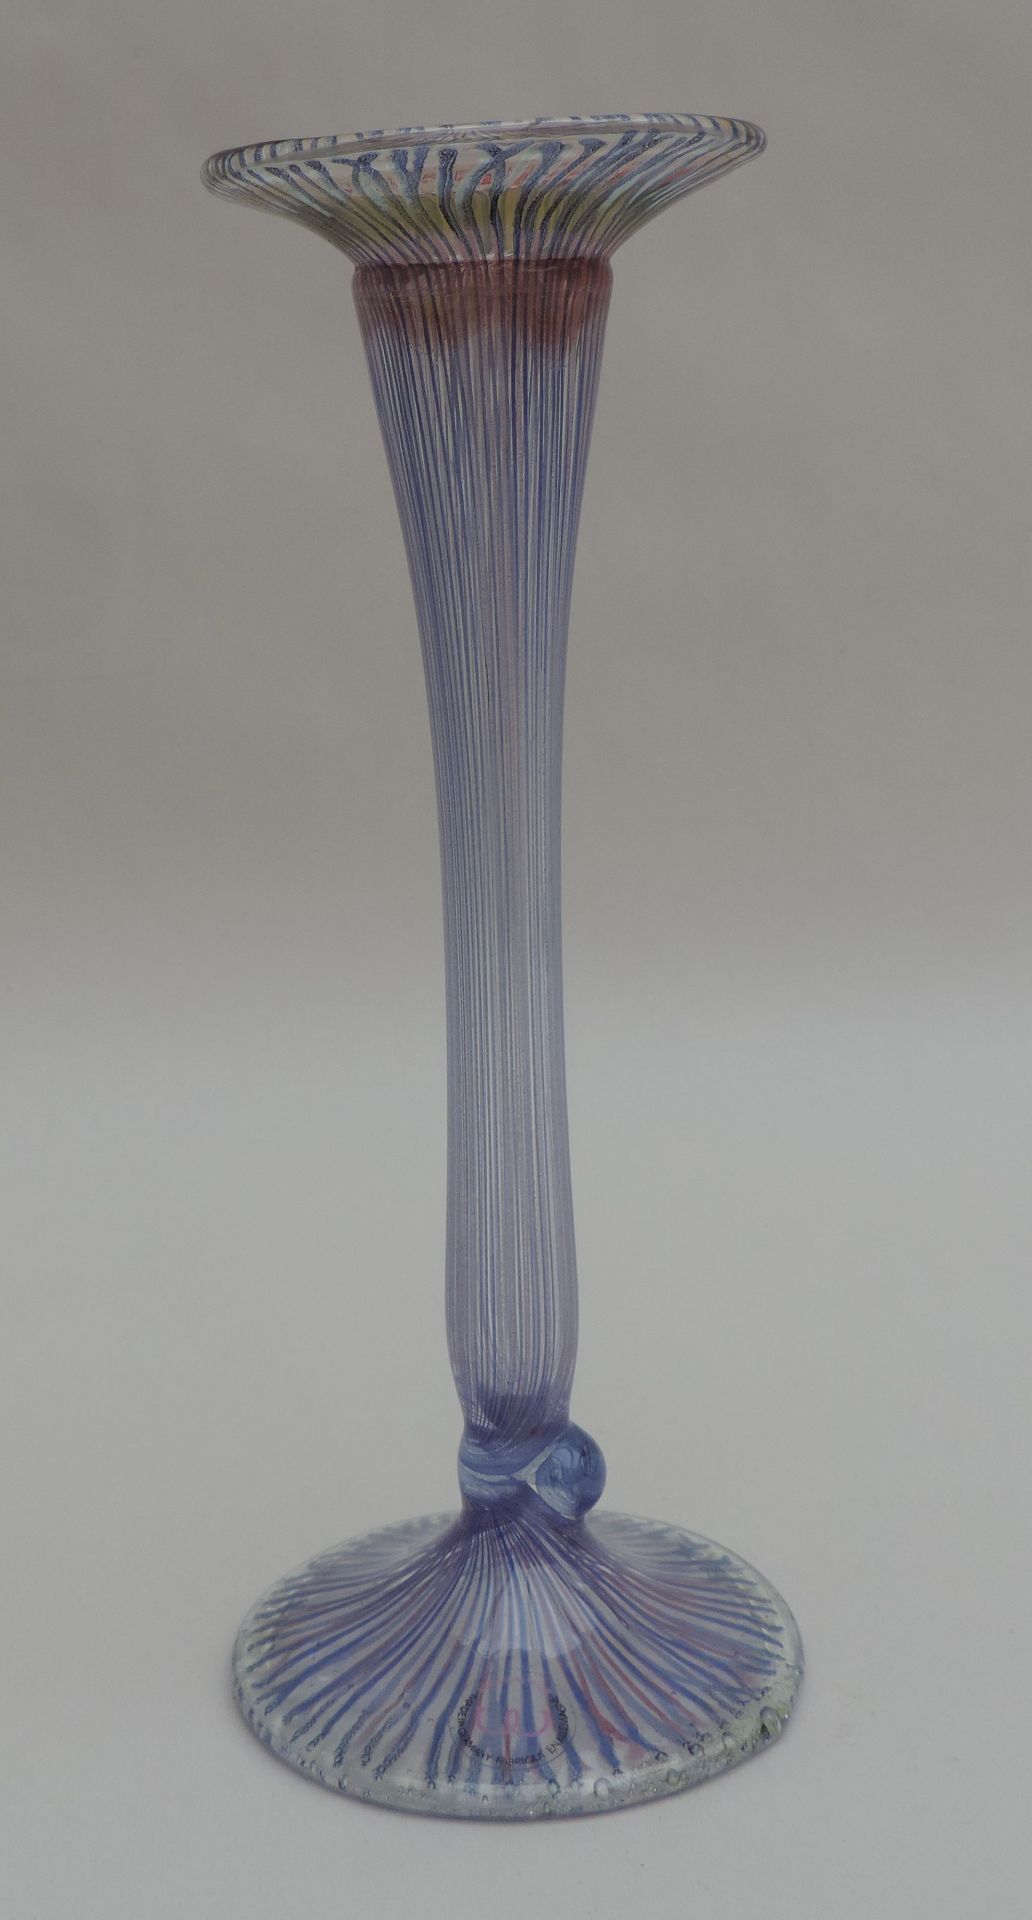 FLÖTENVASE, Design Vera Walther, Fadendekor in blau/violett, sign, H 21,5